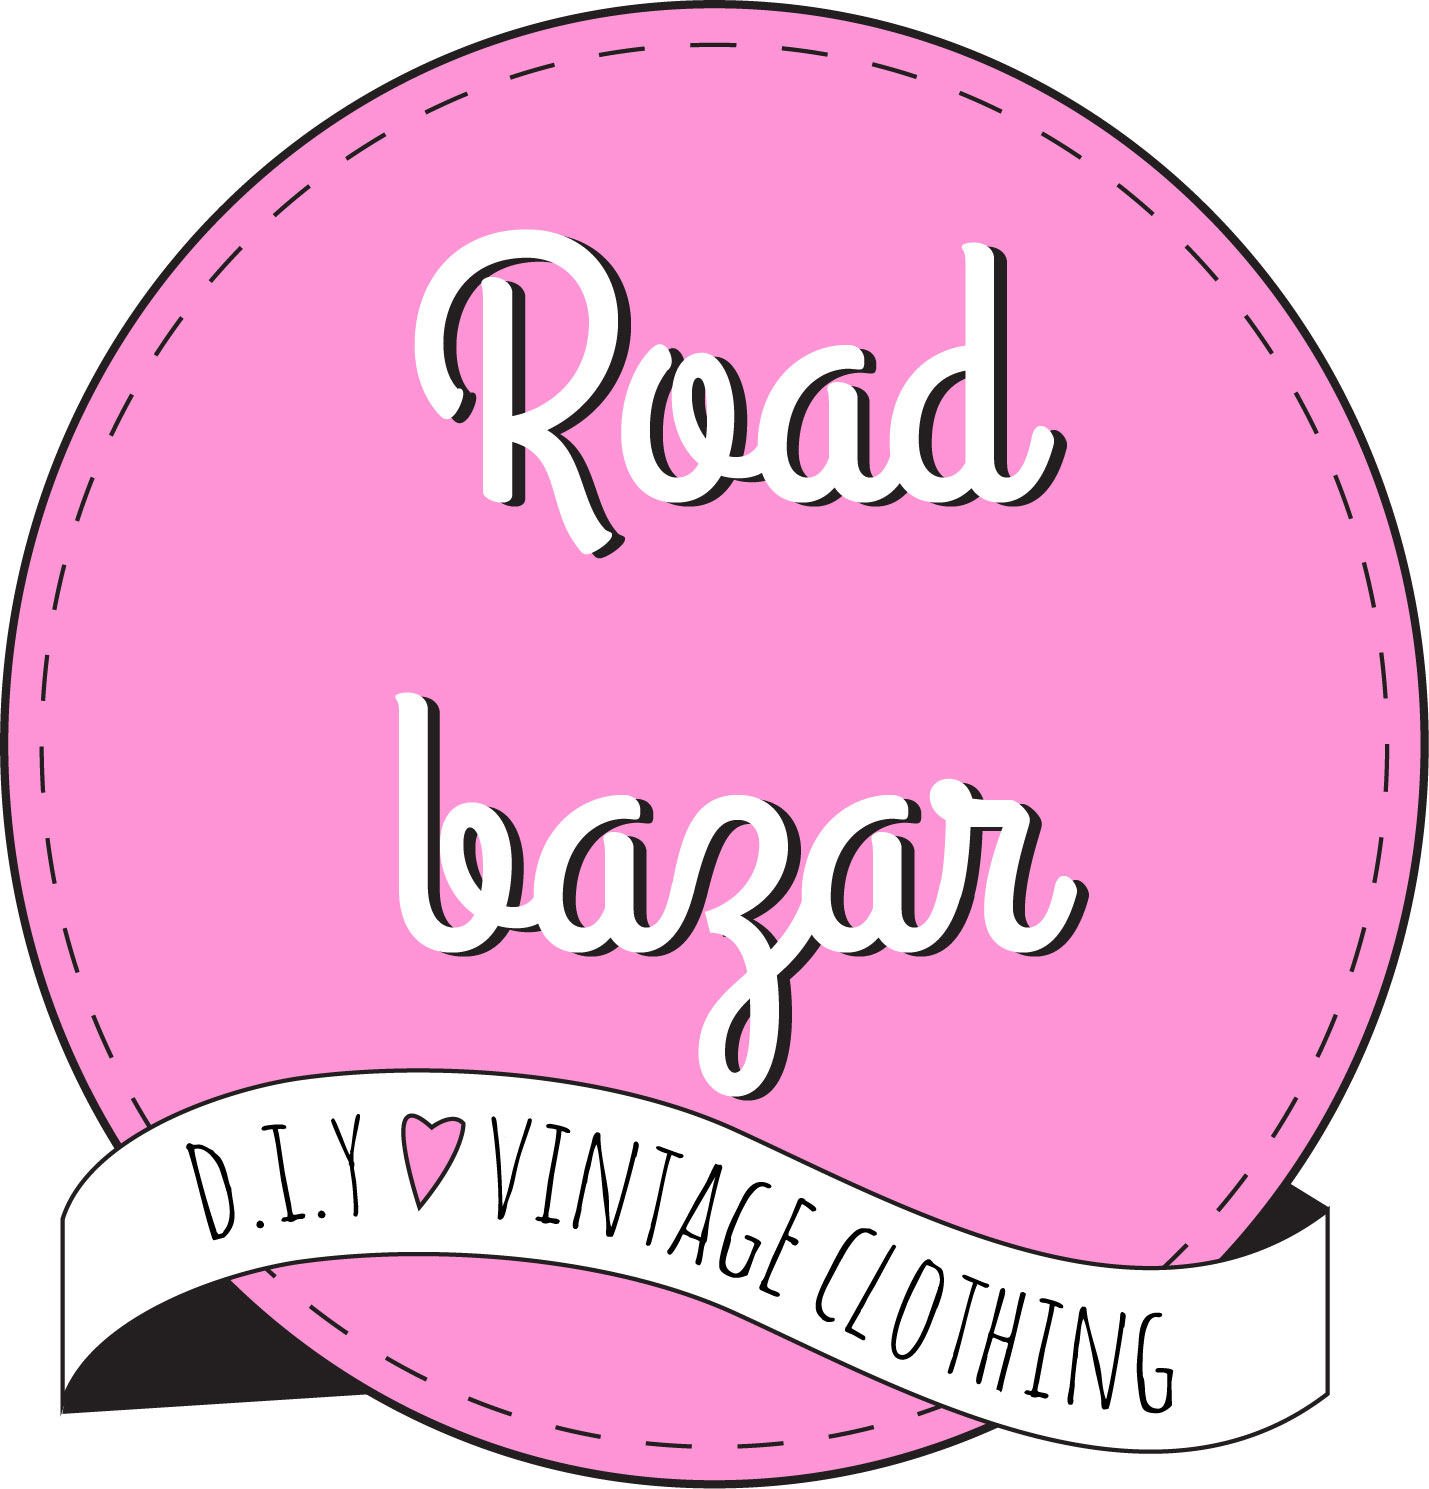 Road bazar | Roadbazarblog